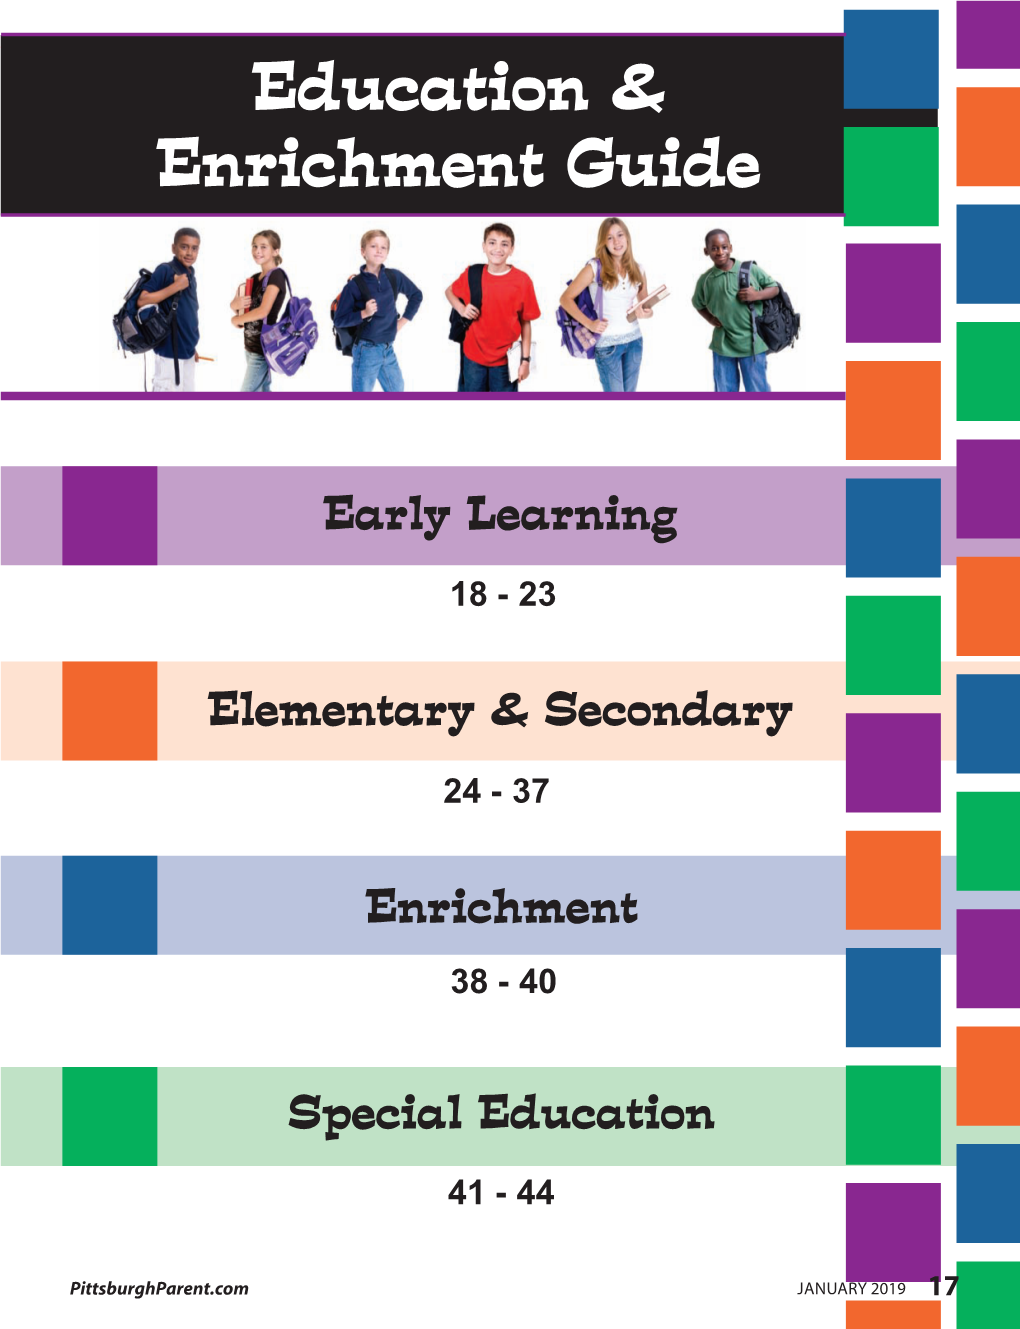 Education & Enrichment Guide